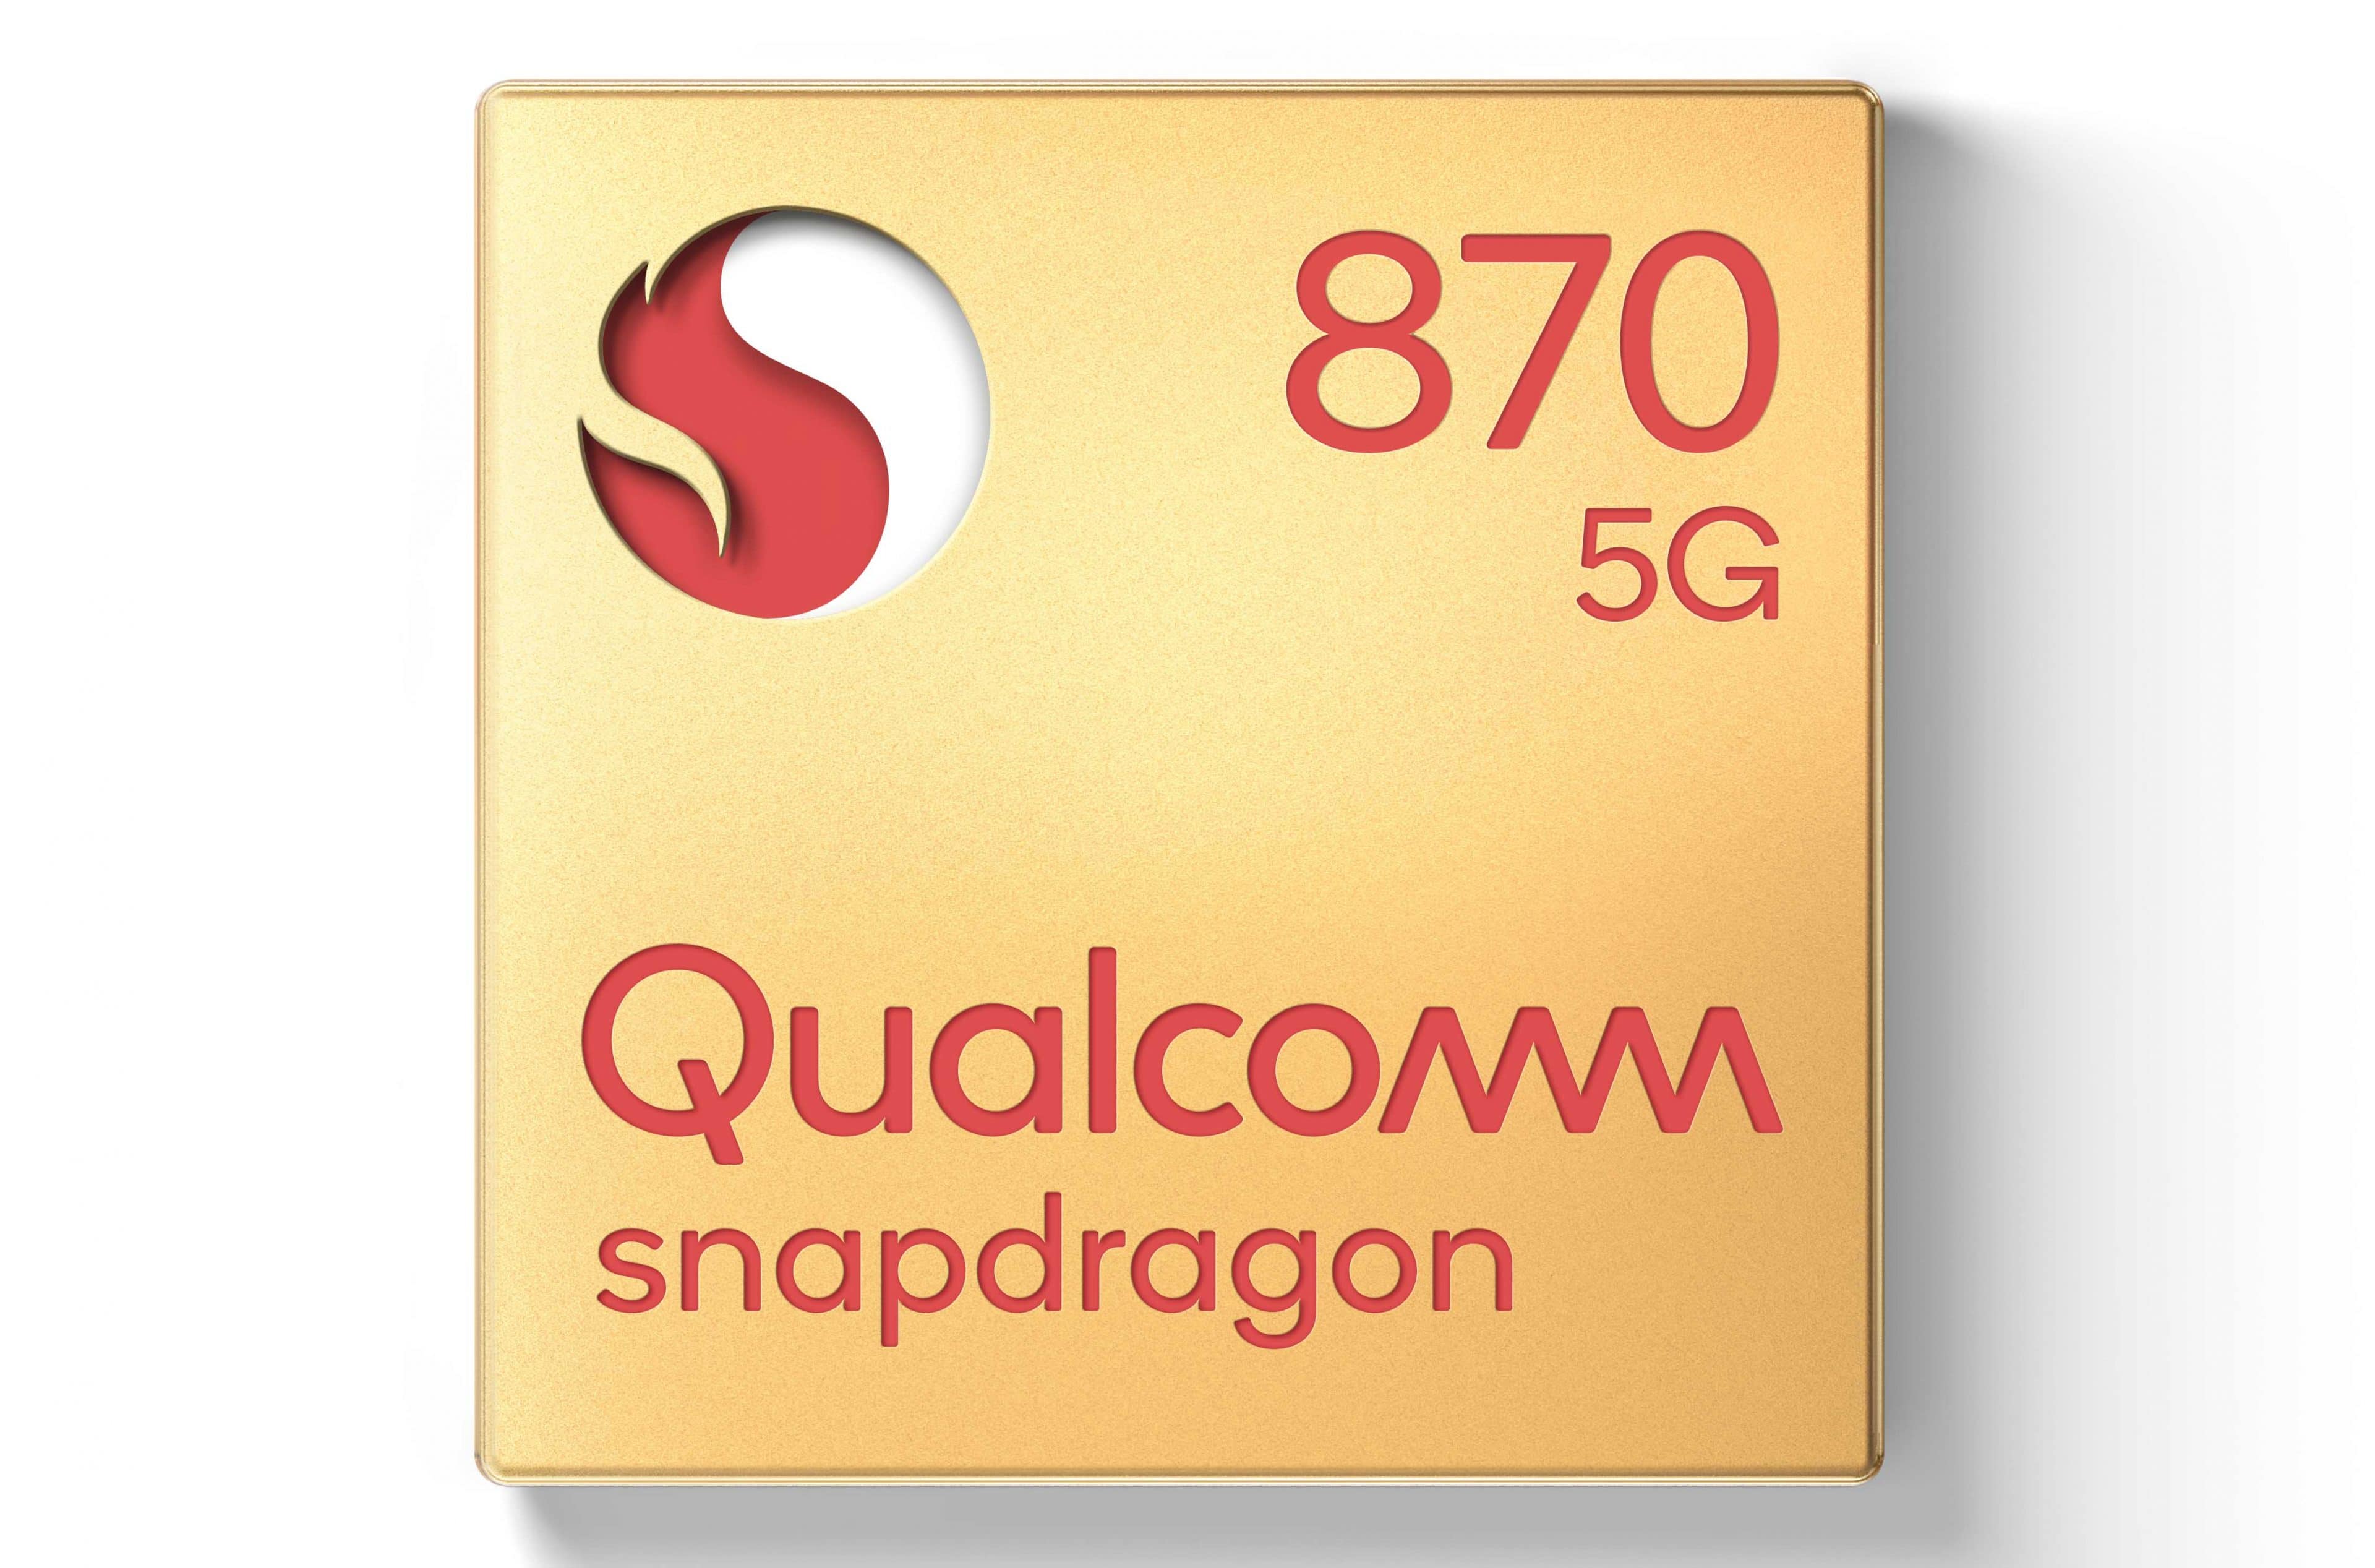 Qualcomm giới thiệu nền tảng di động Snapdragon 870 5G cao cấp